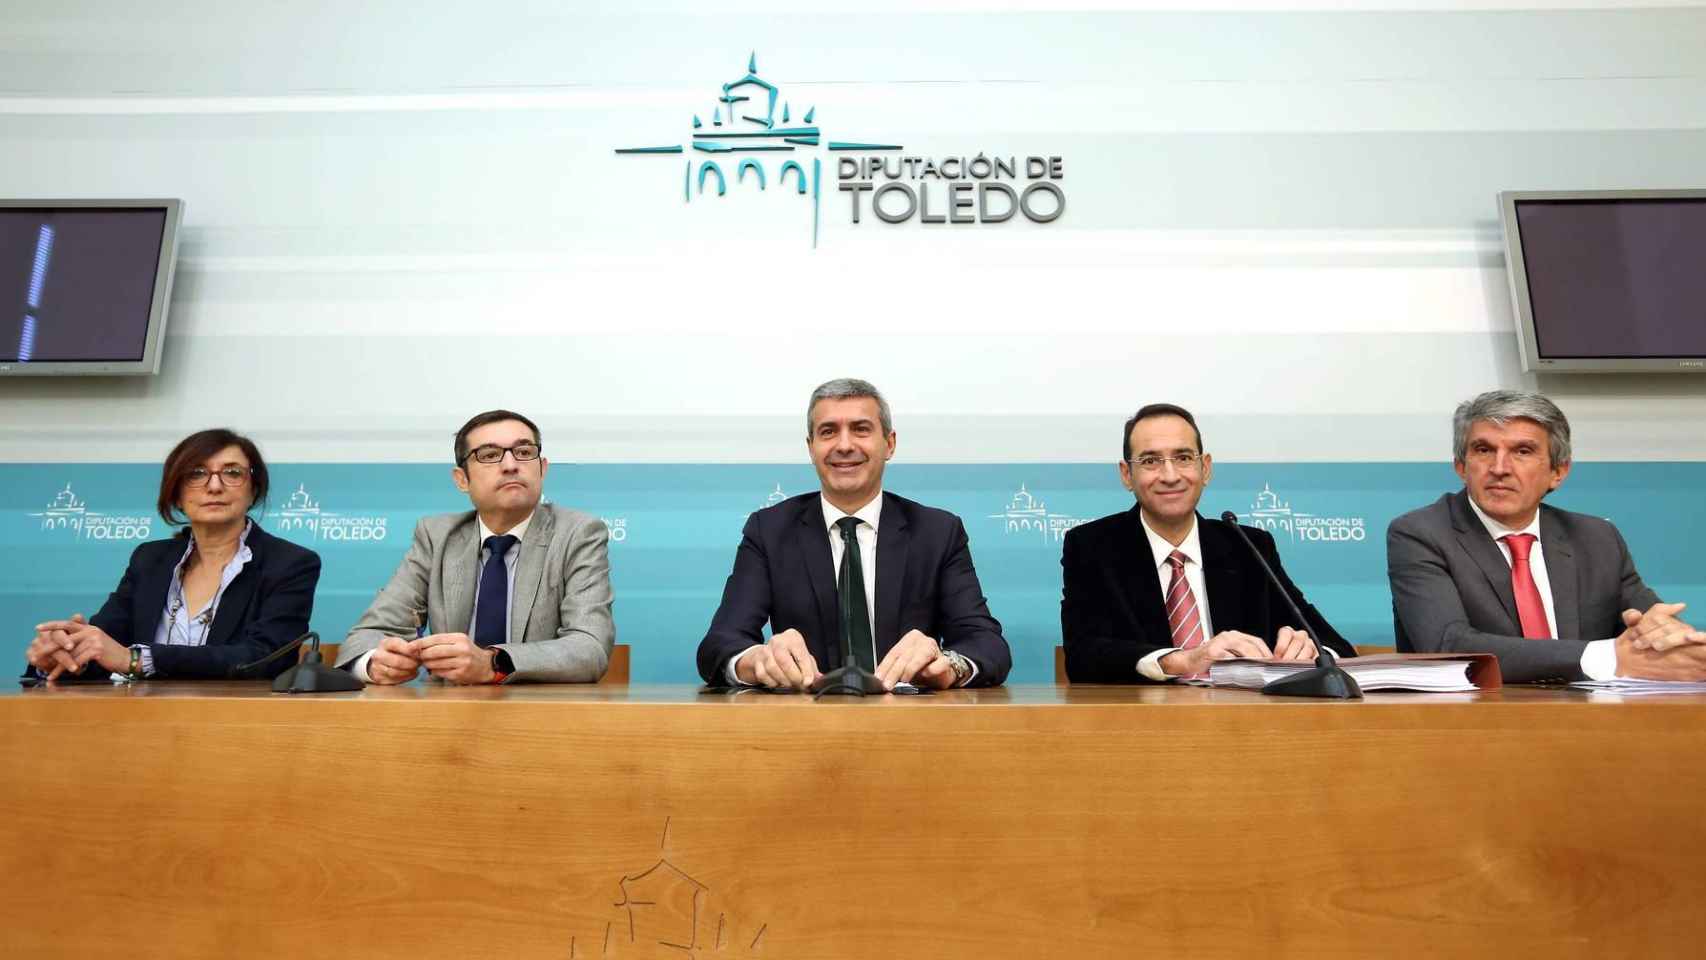 El presidente de la Diputación de Toledo, Álvaro Gutiérrez, y su equipo, este martes en rueda de prensa. Foto: Óscar Huertas